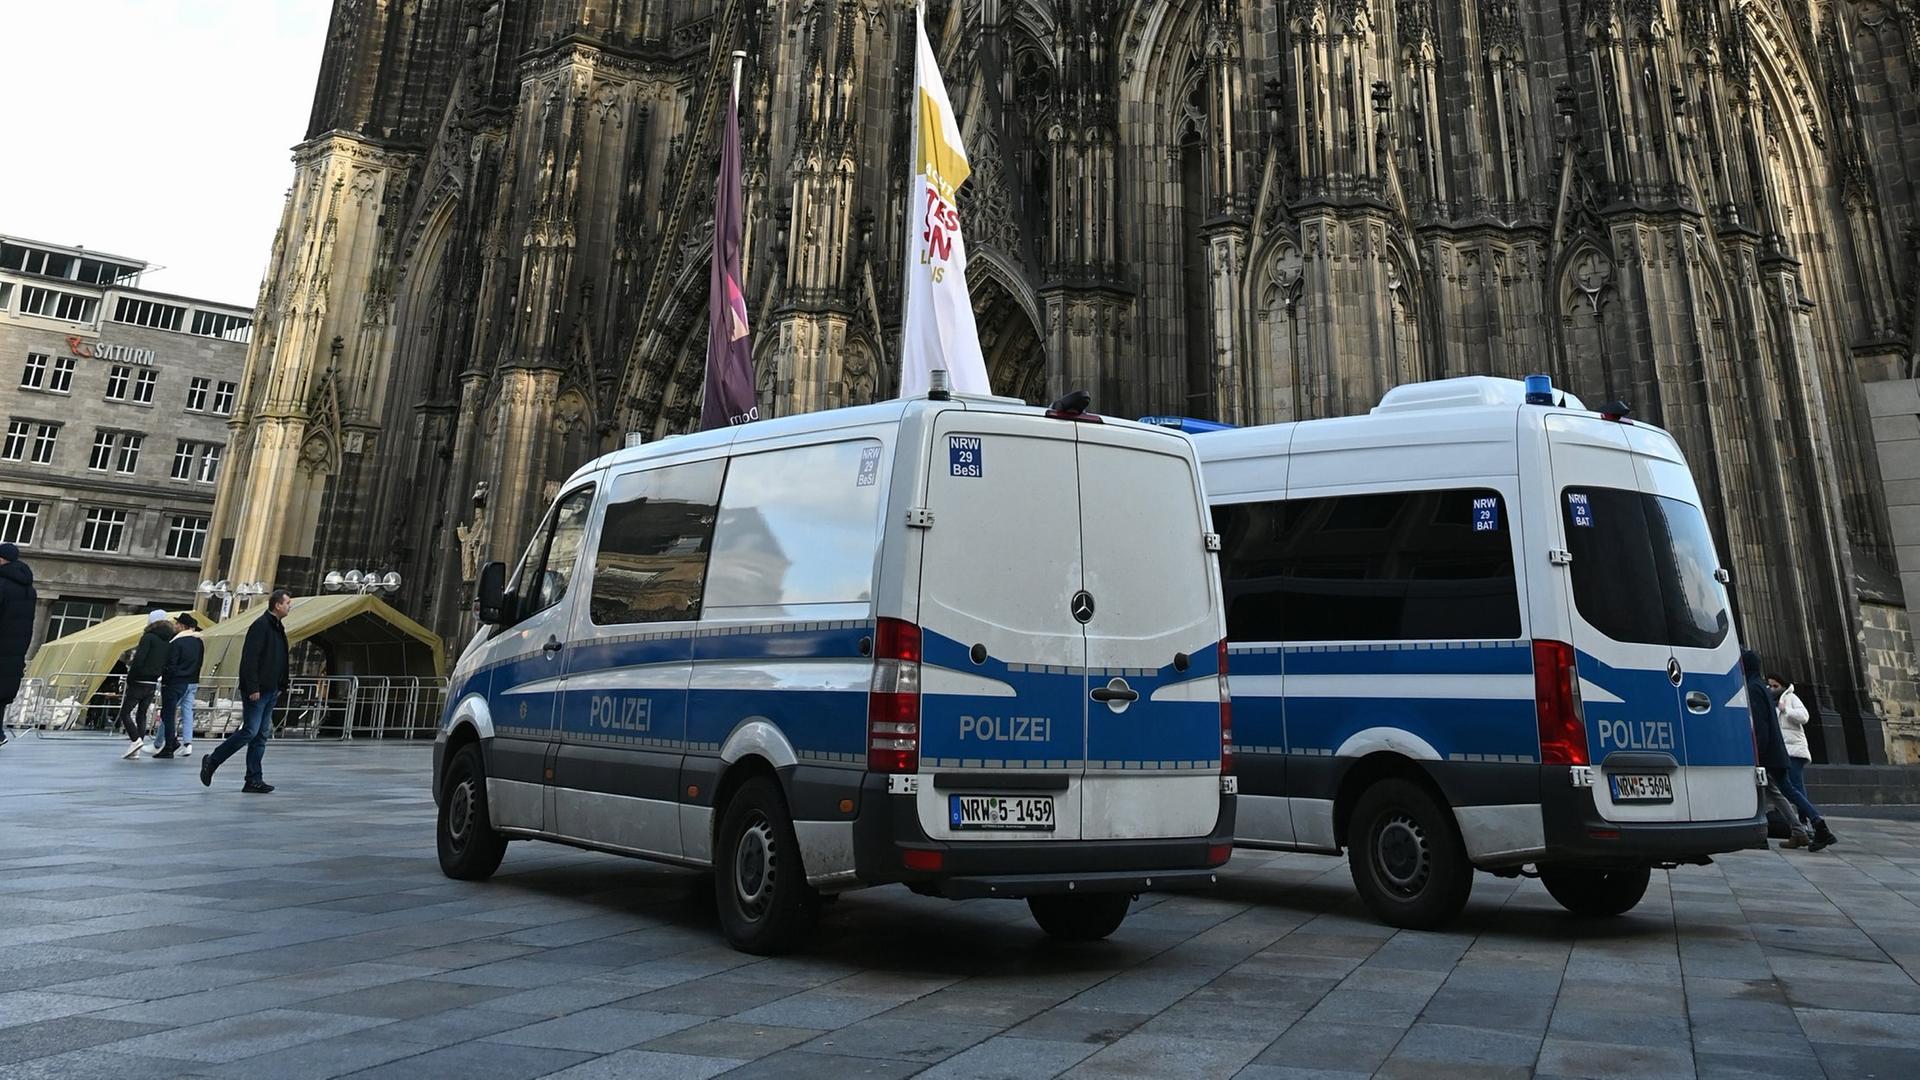 Polizisten und Polizeiwagen stehen vor dem Kölner Dom. Nach einer Terrorwarnung wurden die SicherheitsmaÃnahmen am Kölner Dom erhöht. Er gilt als mögliches Angriffsziel der Terroristen.